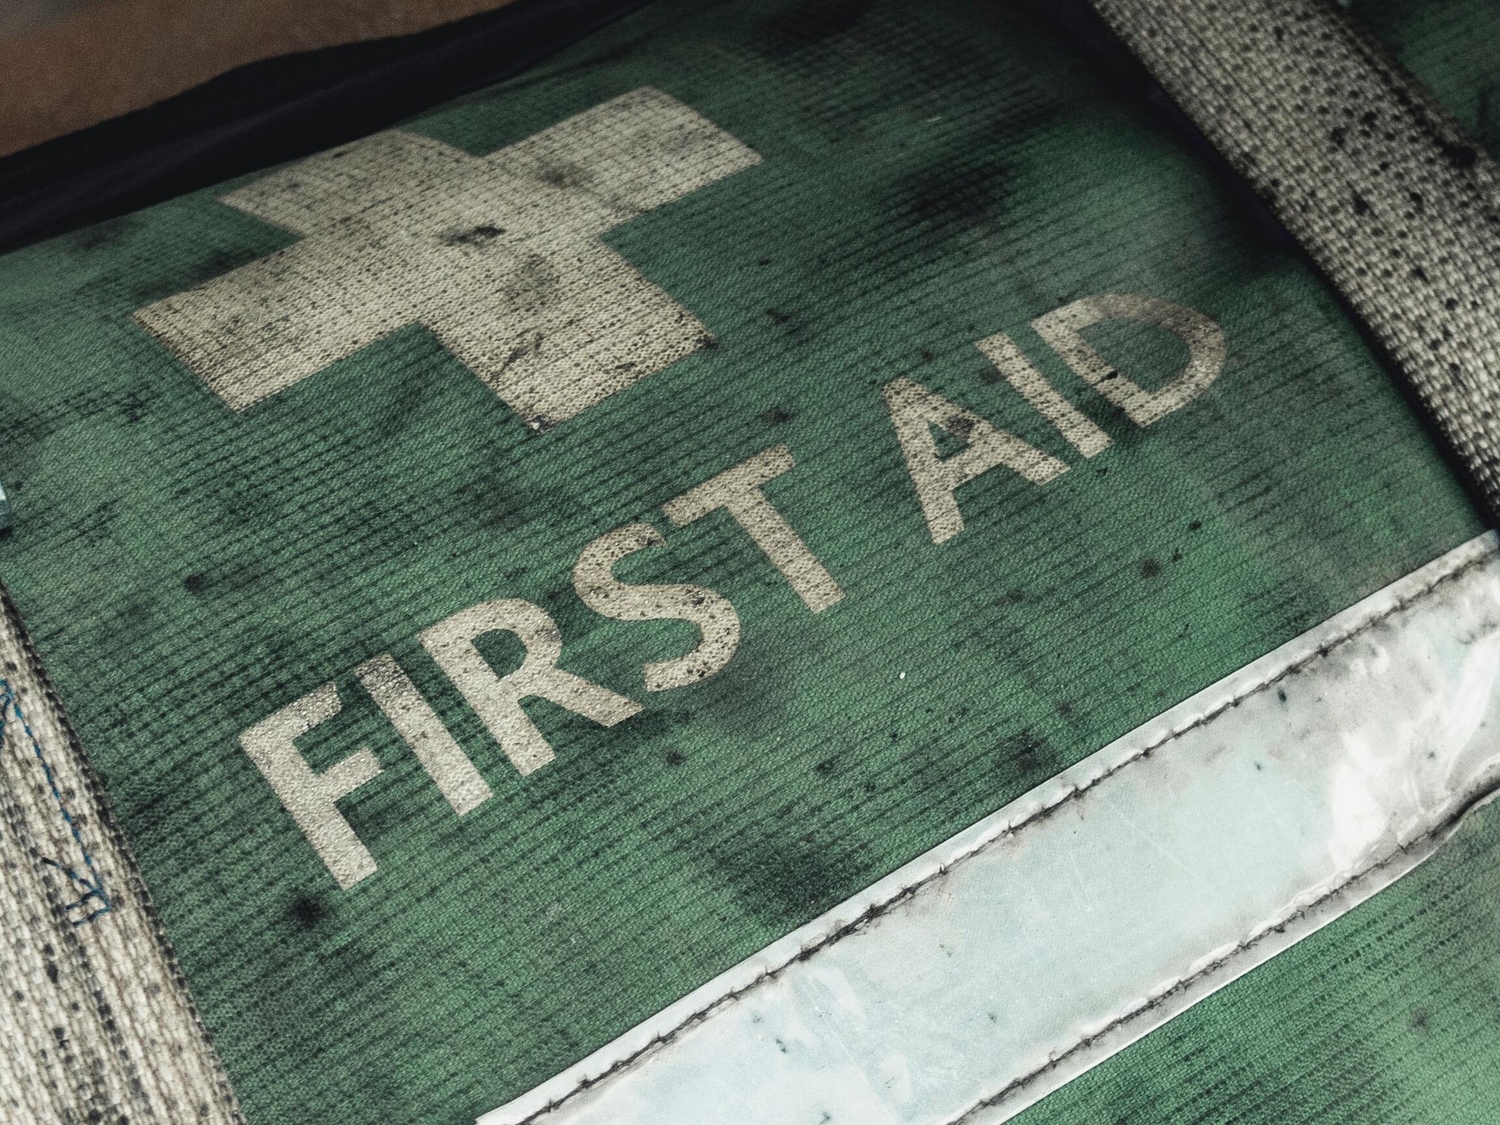 Hvorfor lære førstehjælp?